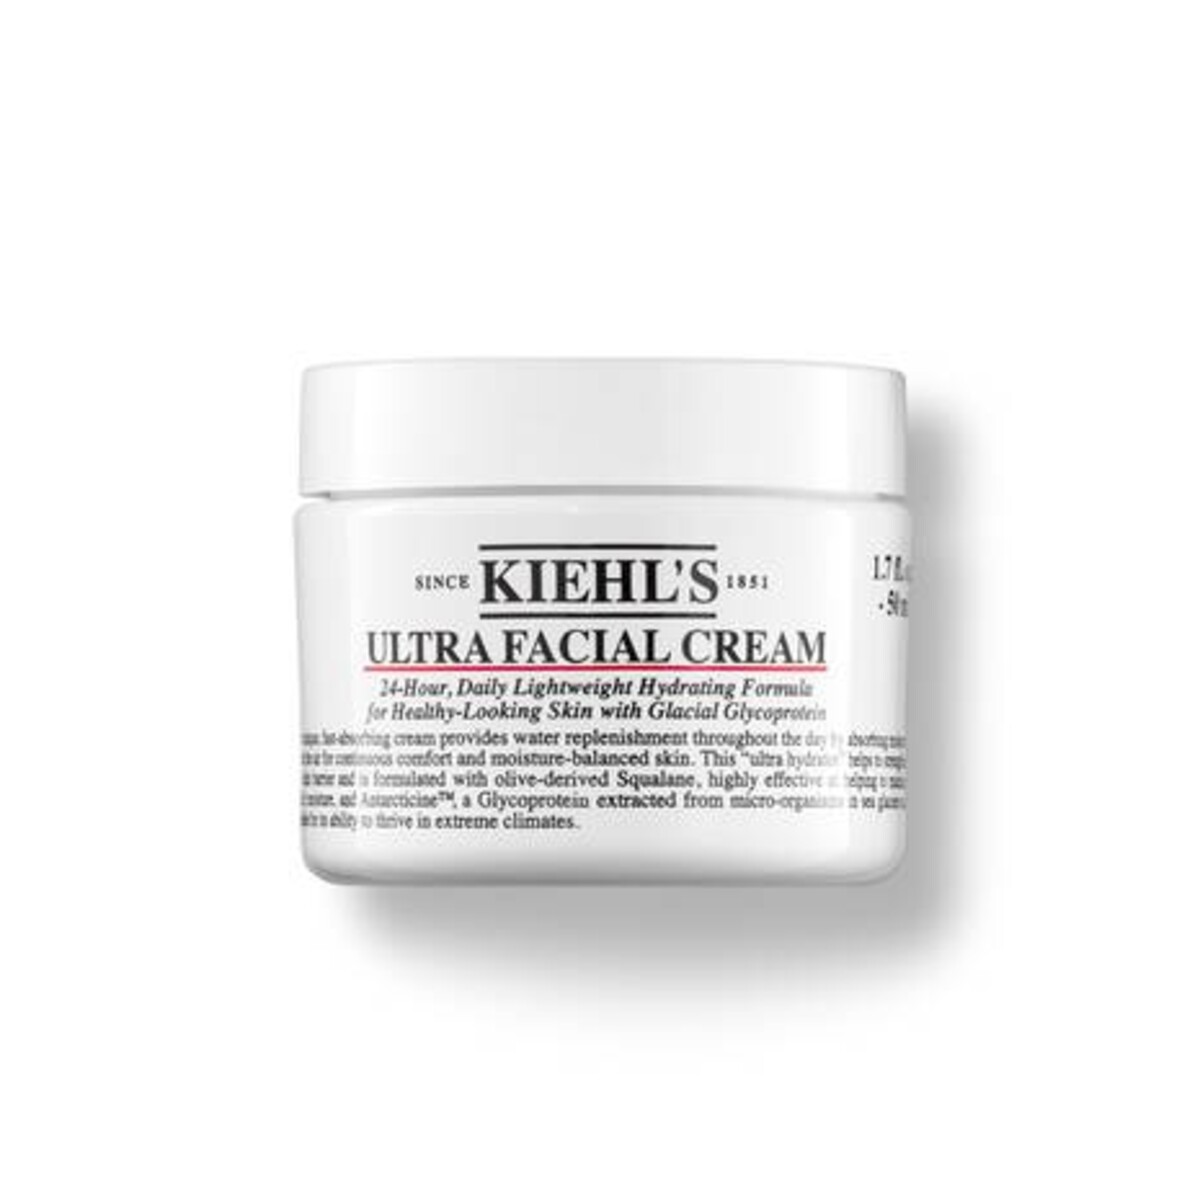 Ultra Facial Cream: Jednoduchý hydratačný krém, ktorý obsahuje skvalán či glykoproteín. Obnovuje kožnú bariéru, hodí sa do studených mesiacov a obľúbi si ho aj mastná pokožka. Bežná cena je 36 €(50 ml), ušetriť môžeš aspoň 9 €, ak nakúpiš nad 40 €.